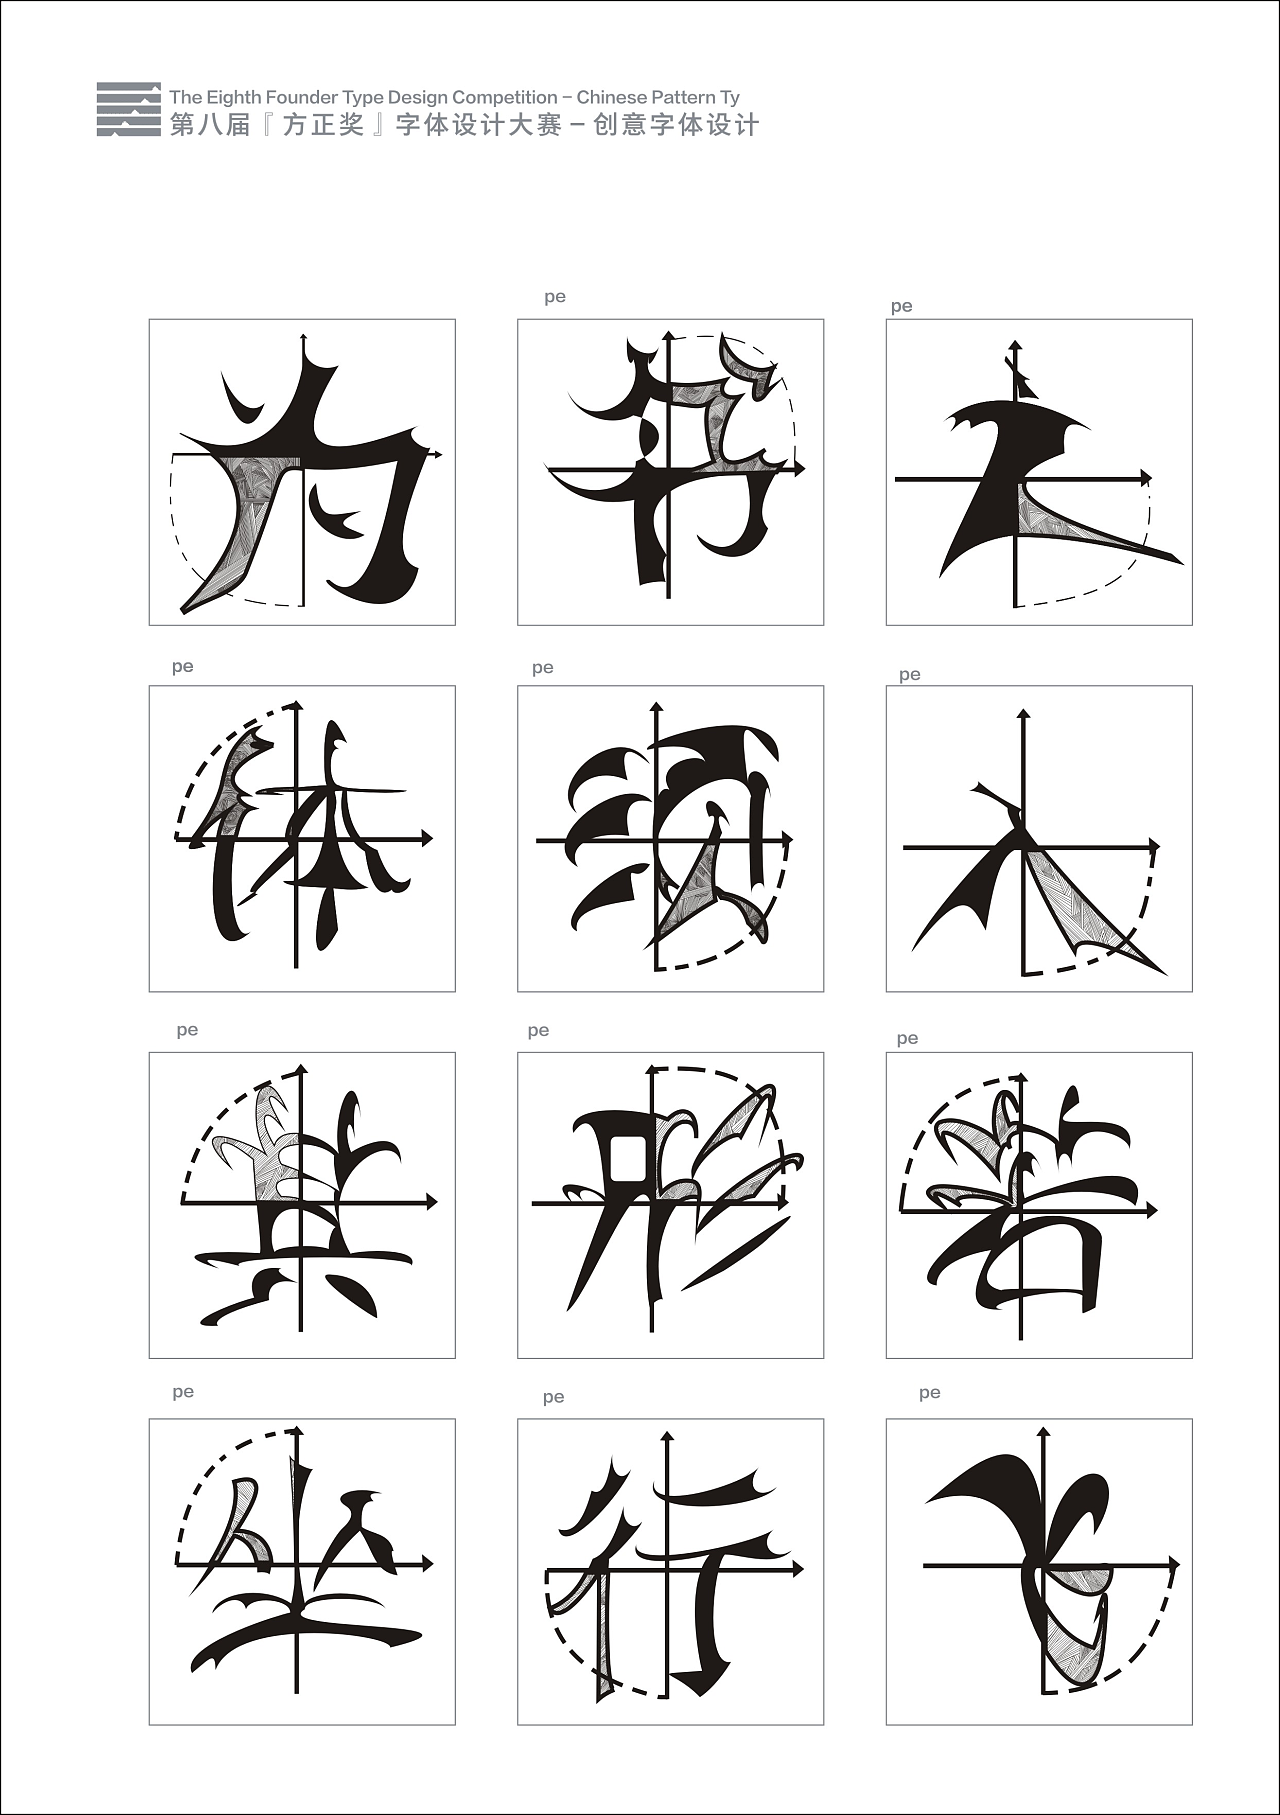 二十二年不断助力汉字字体传承创新，第十二届『方正奖』设计大赛拉开序幕